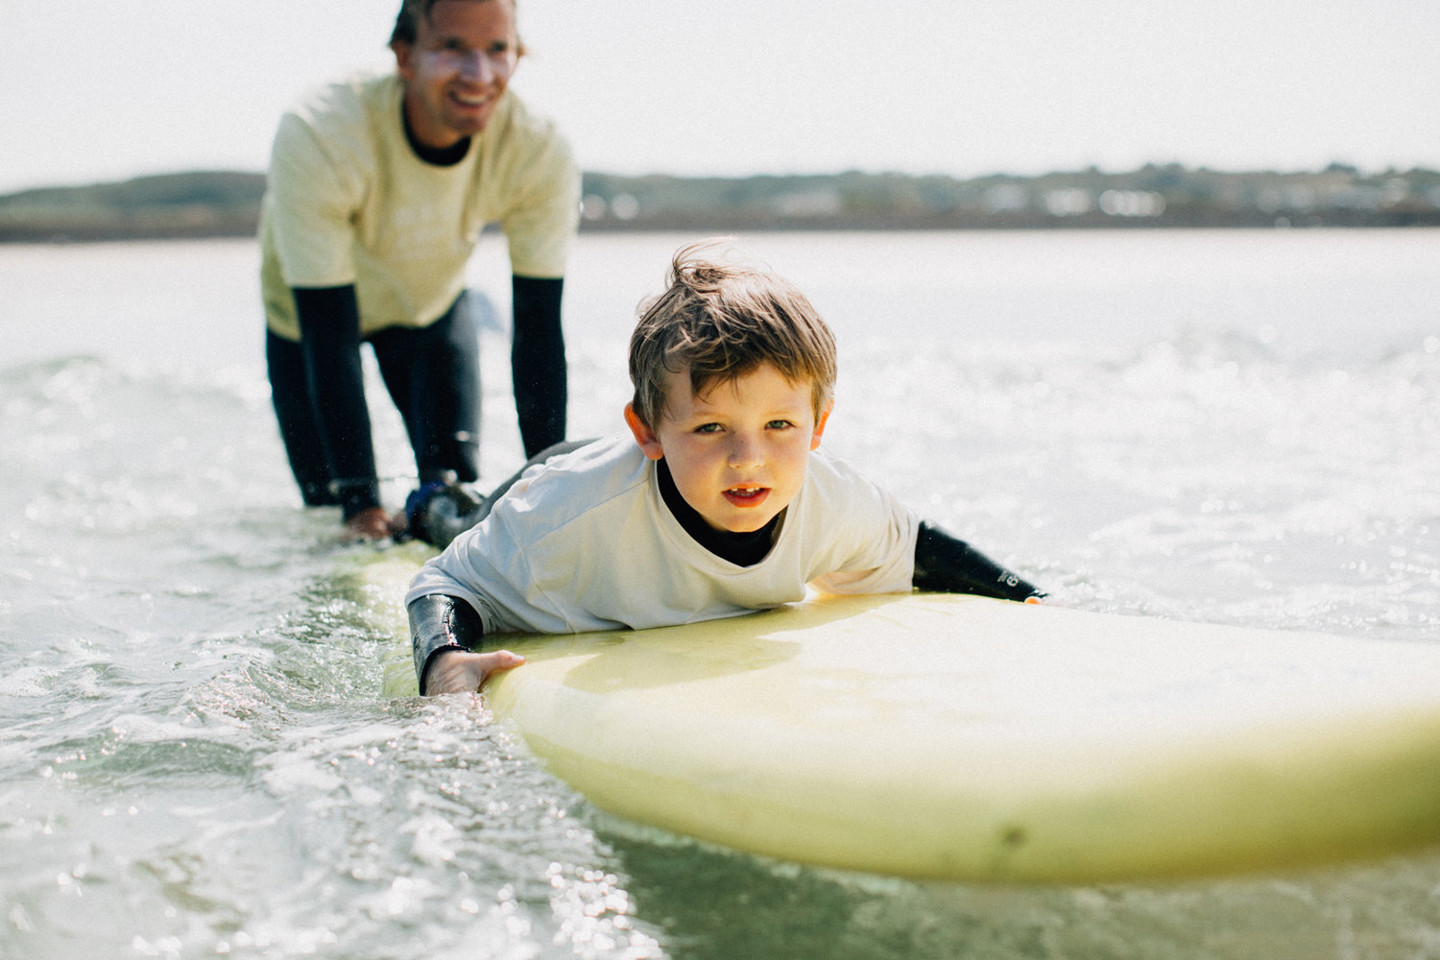 Child on surfboard